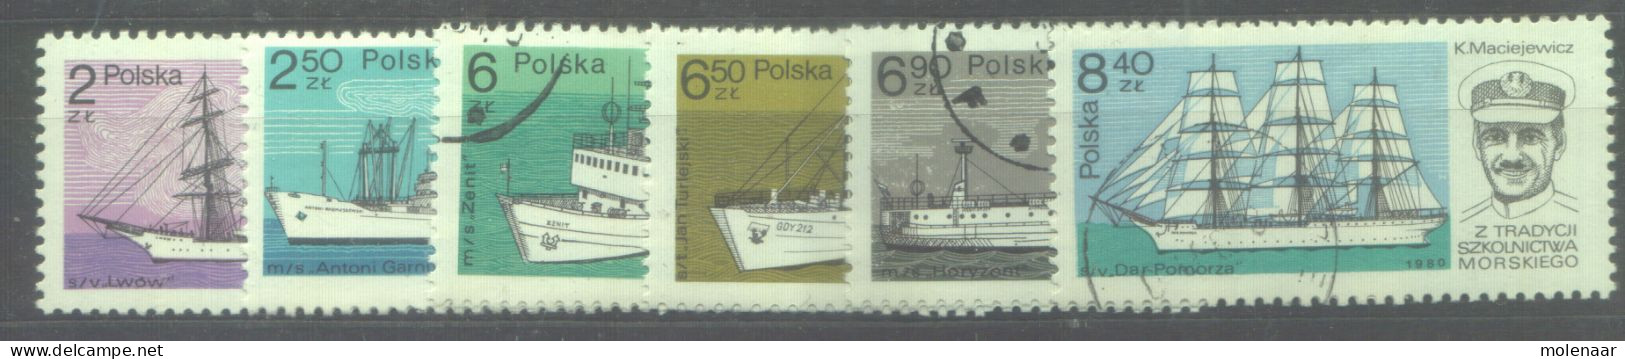 Postzegels > Europa > Polen > 1944-.... Republiek > 1981-90 > Gebruikt 2701-2706 (12187) - Used Stamps